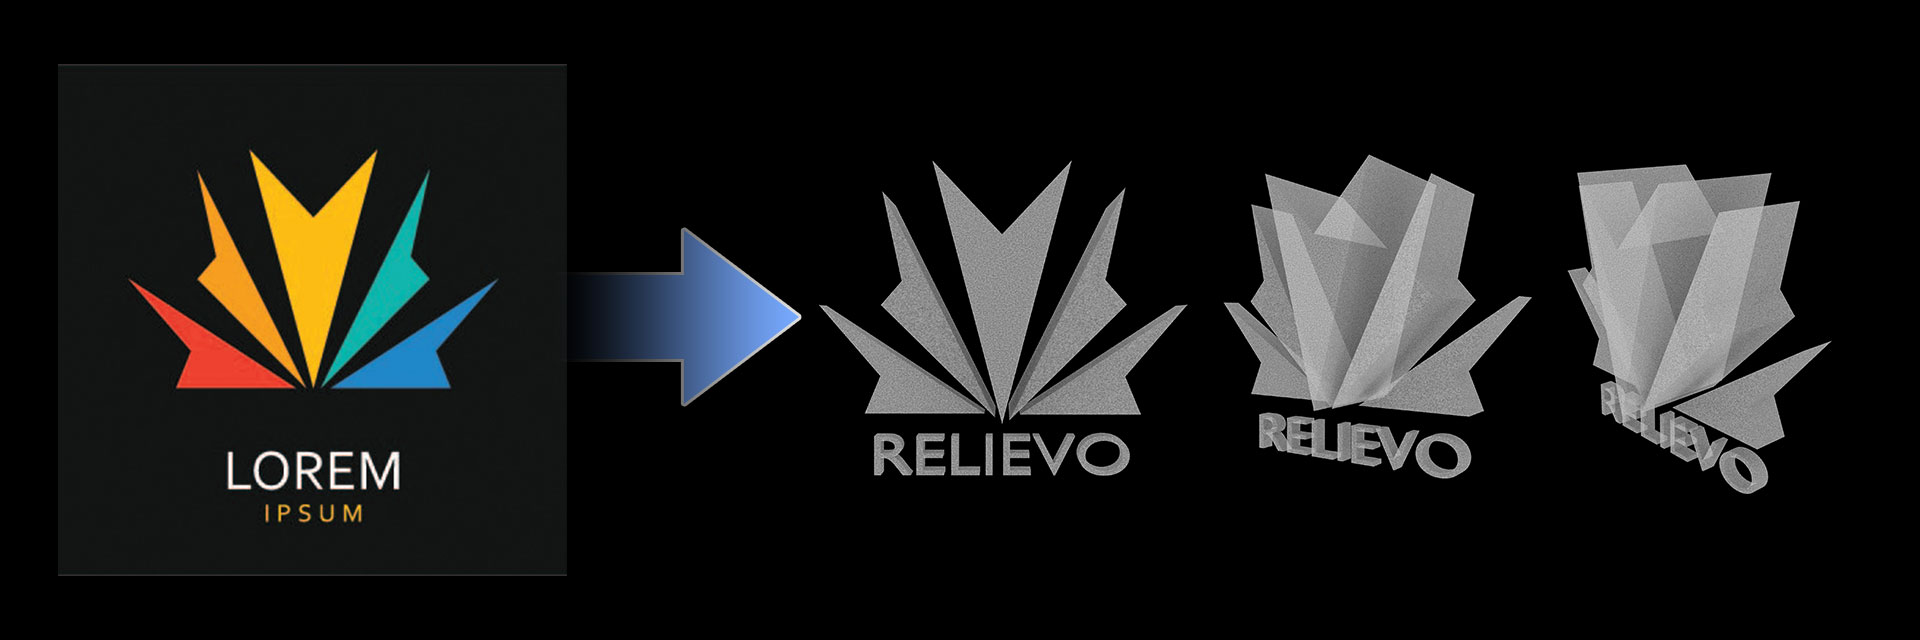 Transformacja logotypu - relief